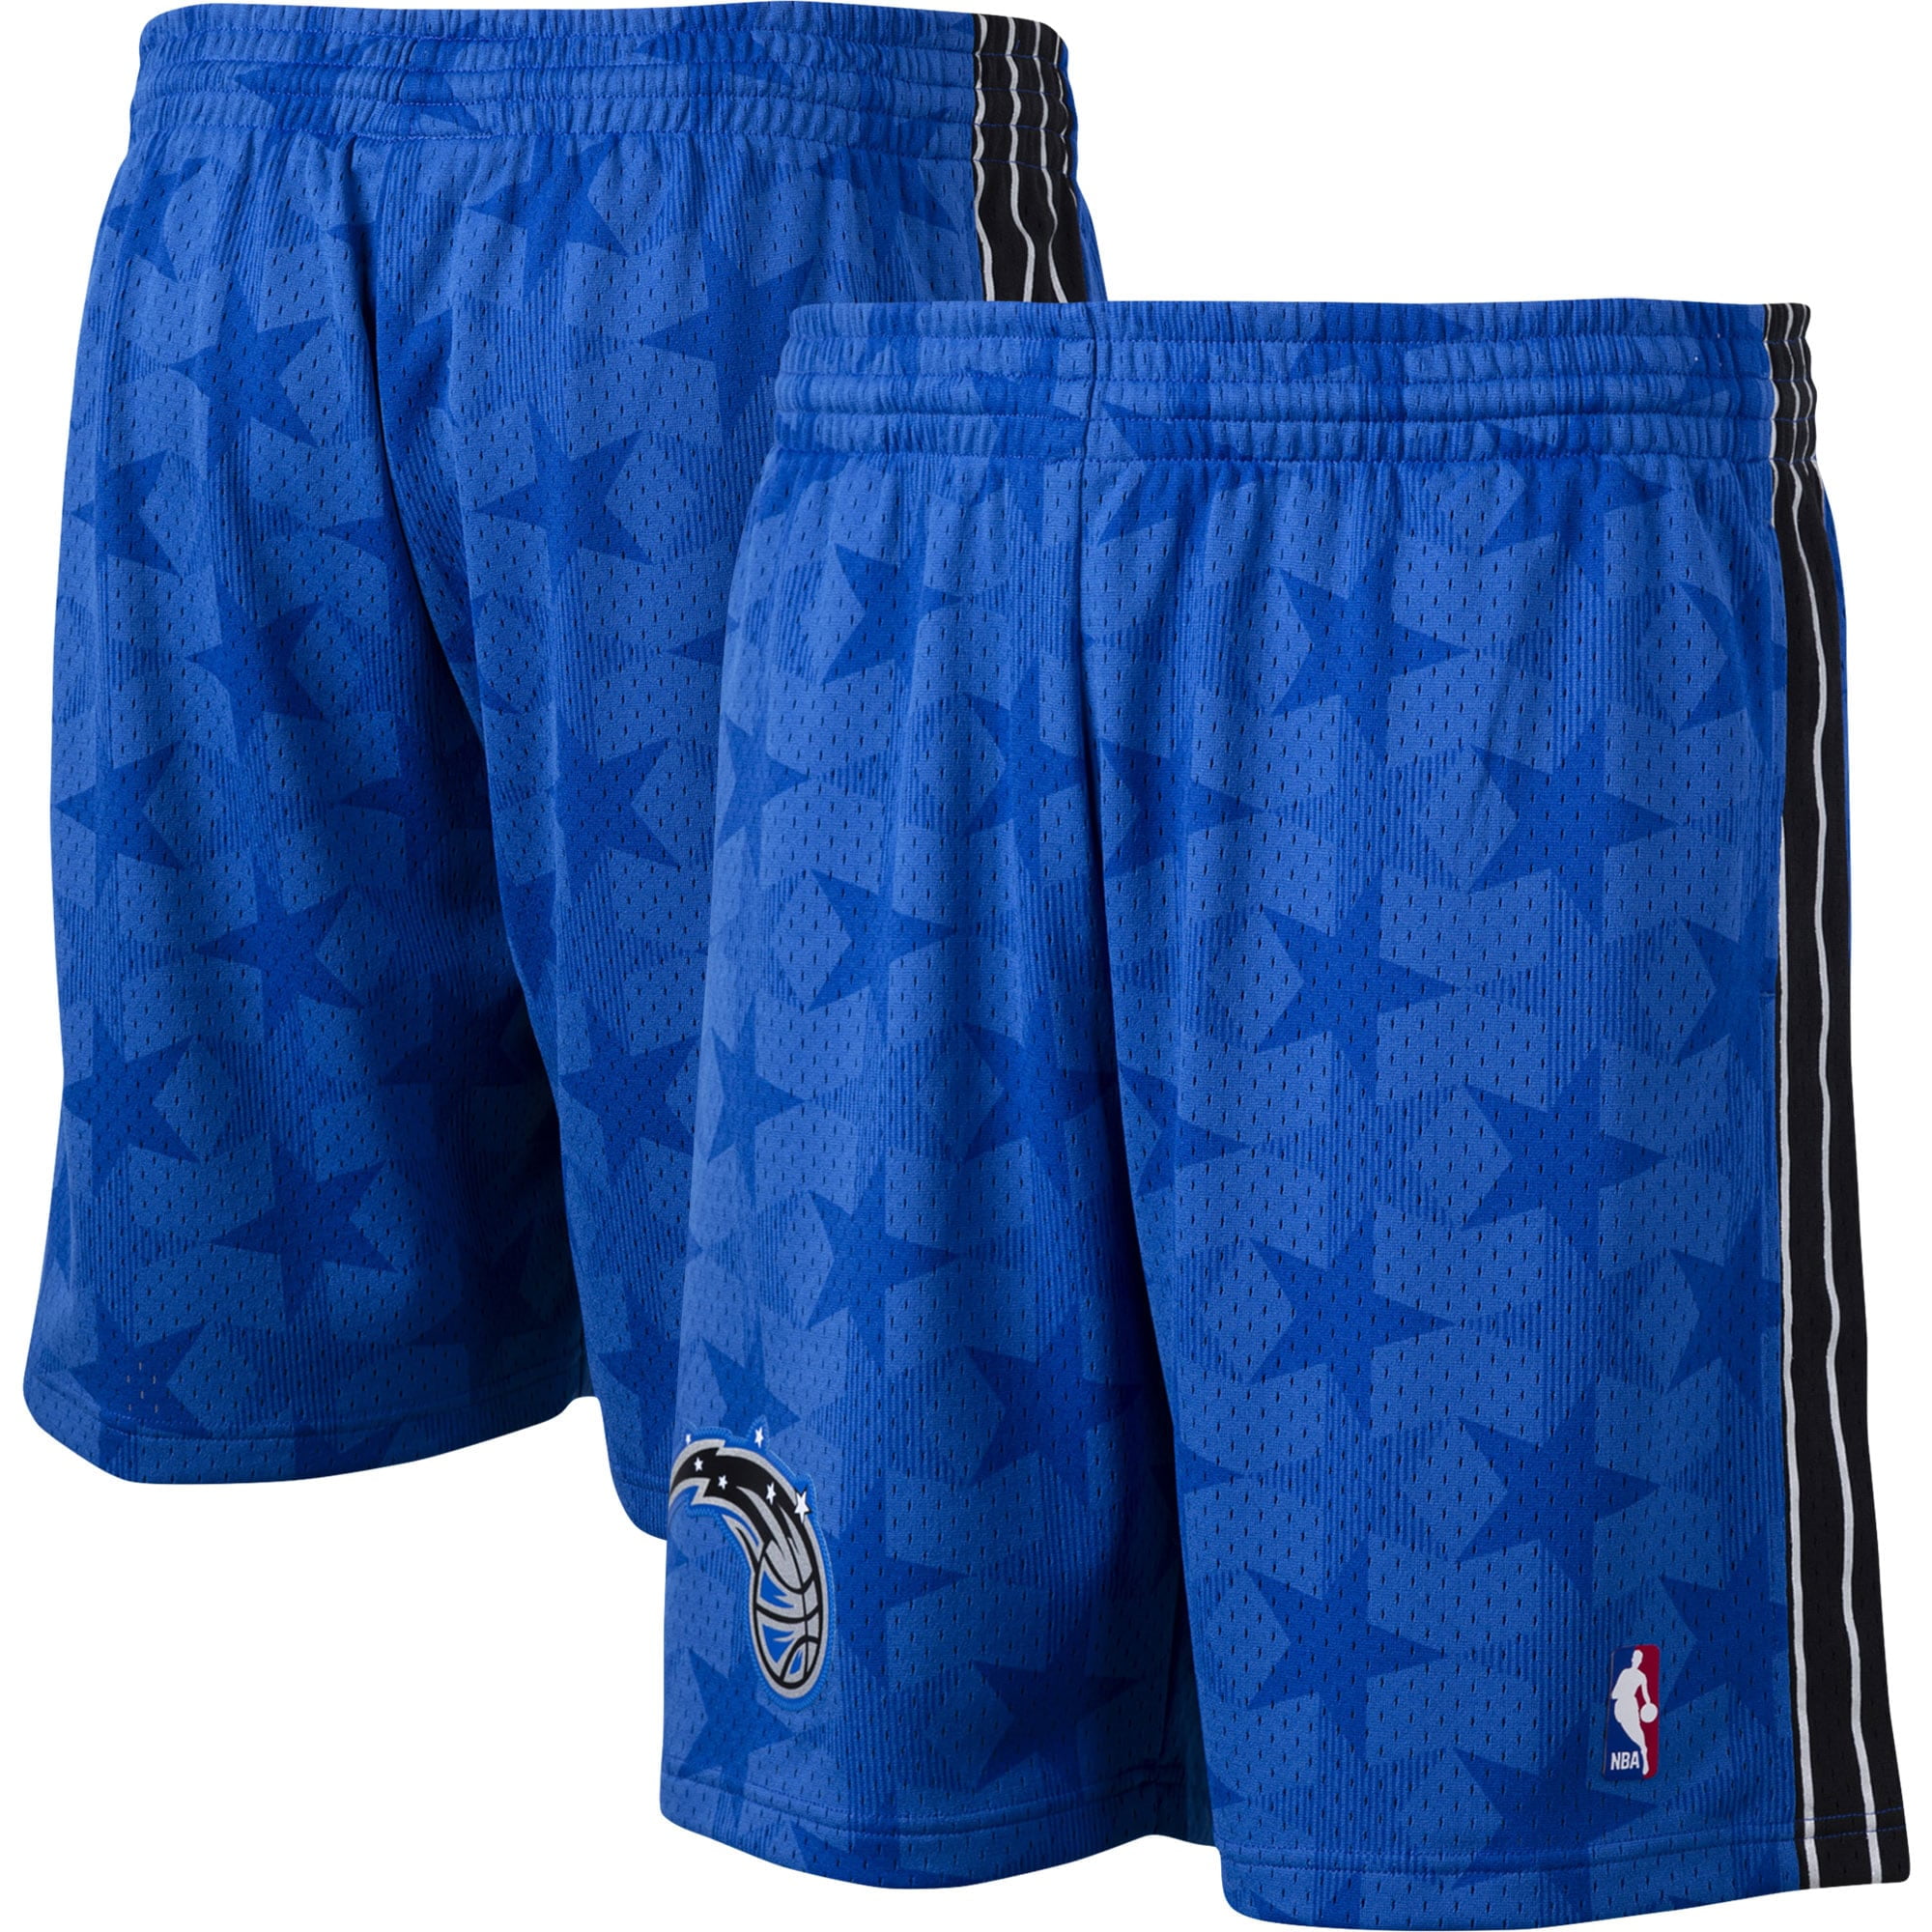 Retro Orlando Magic Basketball Shorts Stitched Blue 